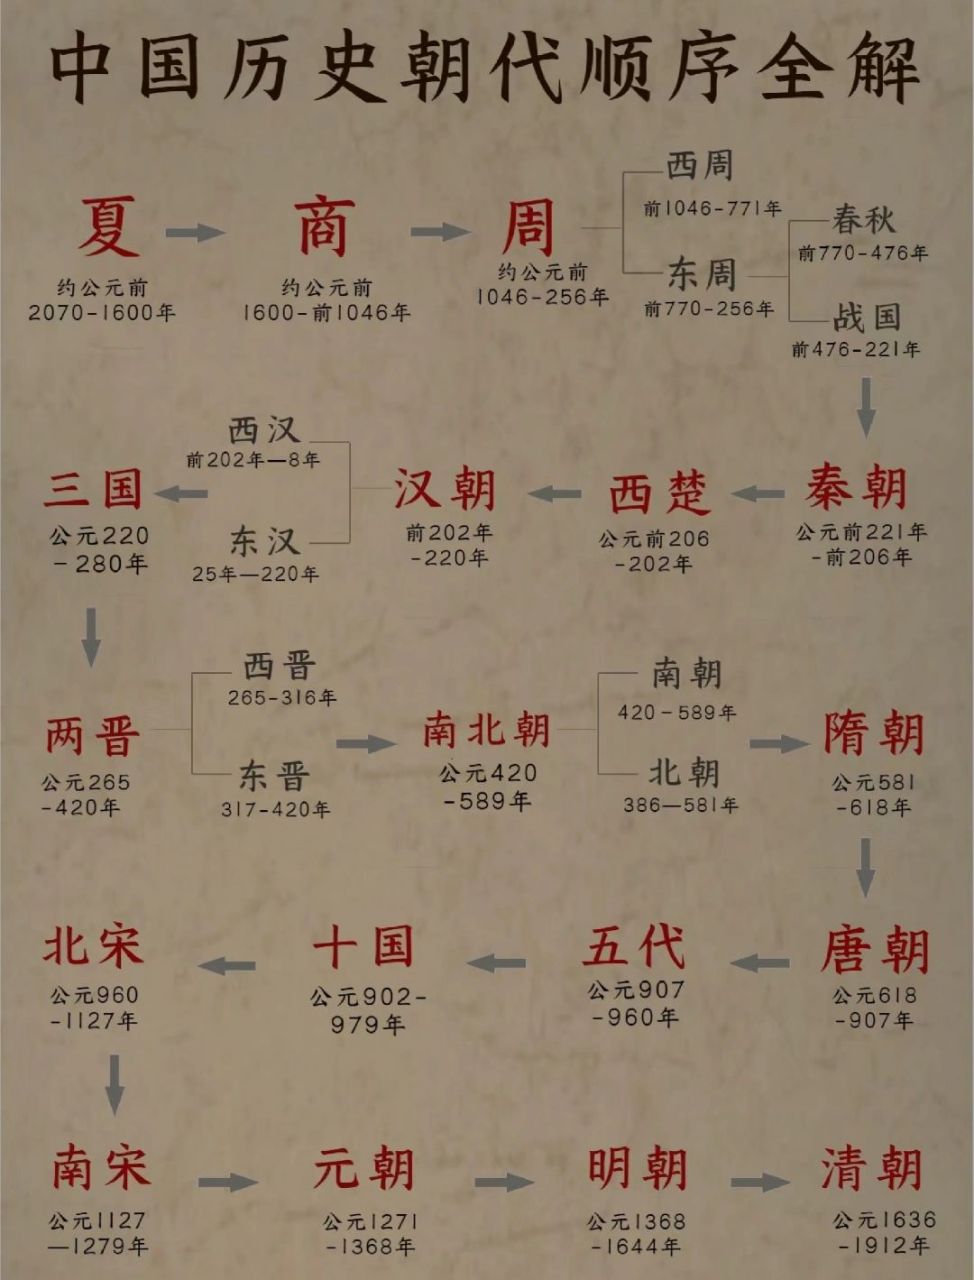 中国历史朝代更替表